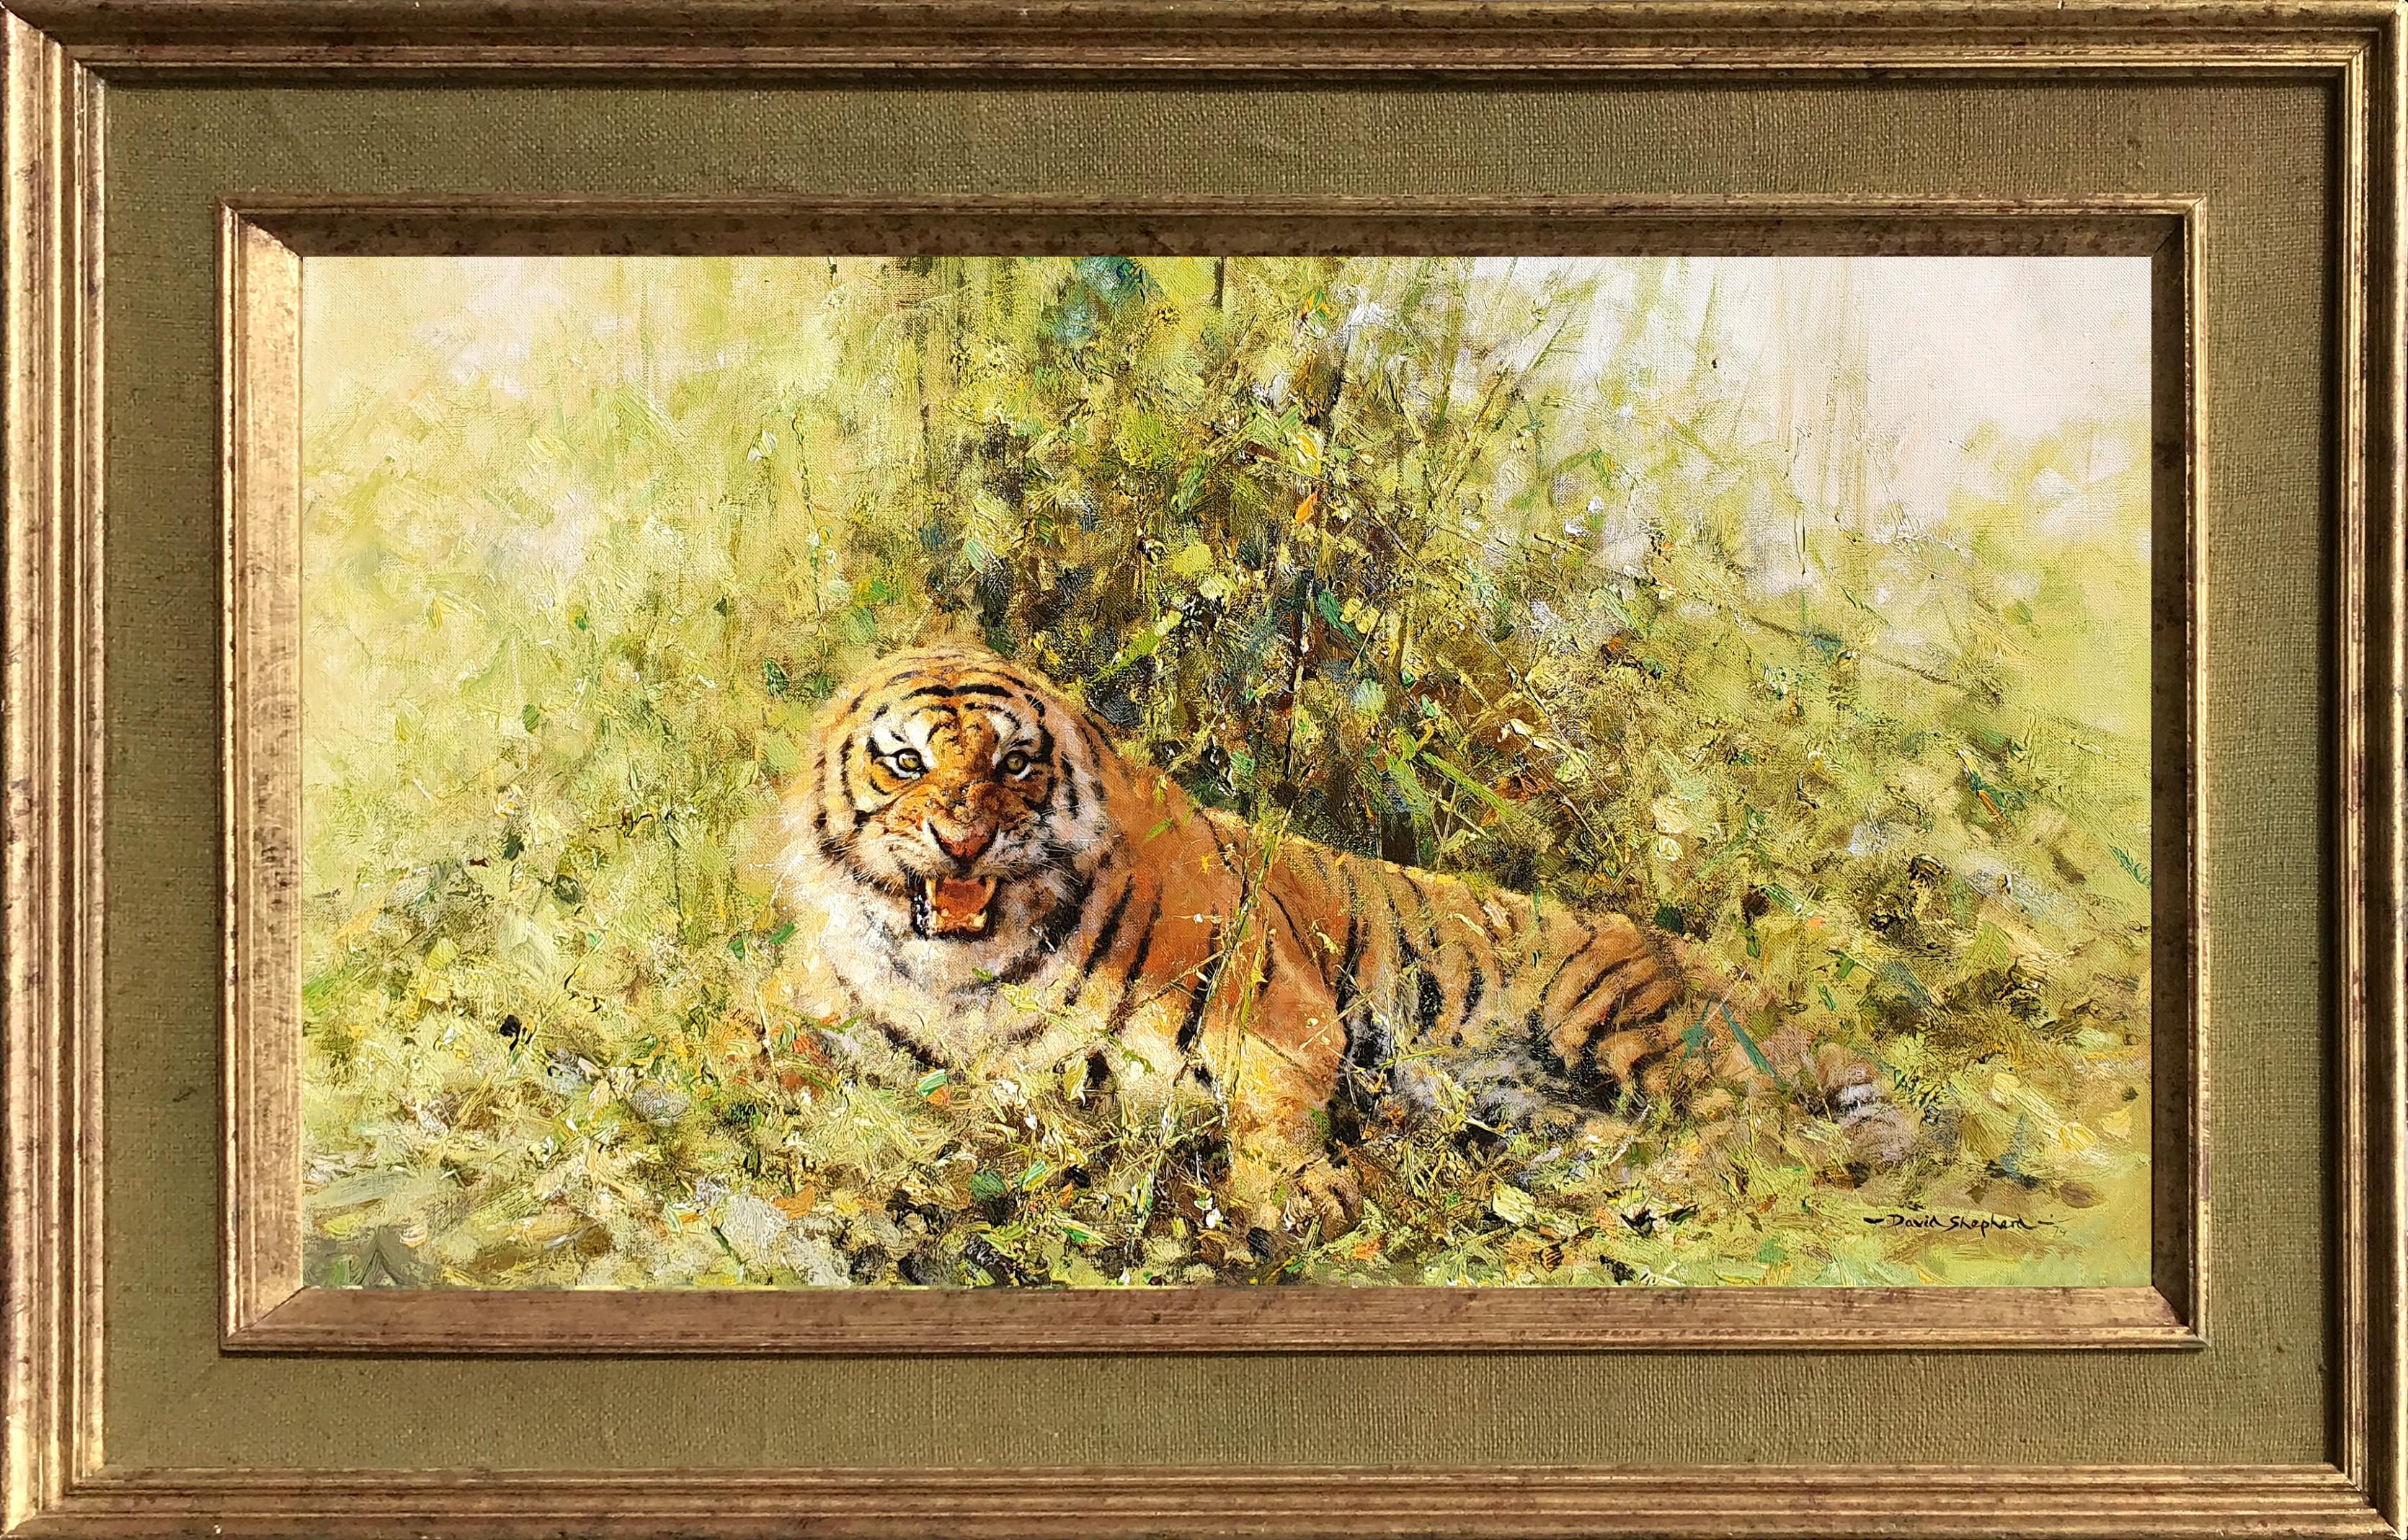 David Shepherd Animal Painting - Tiger